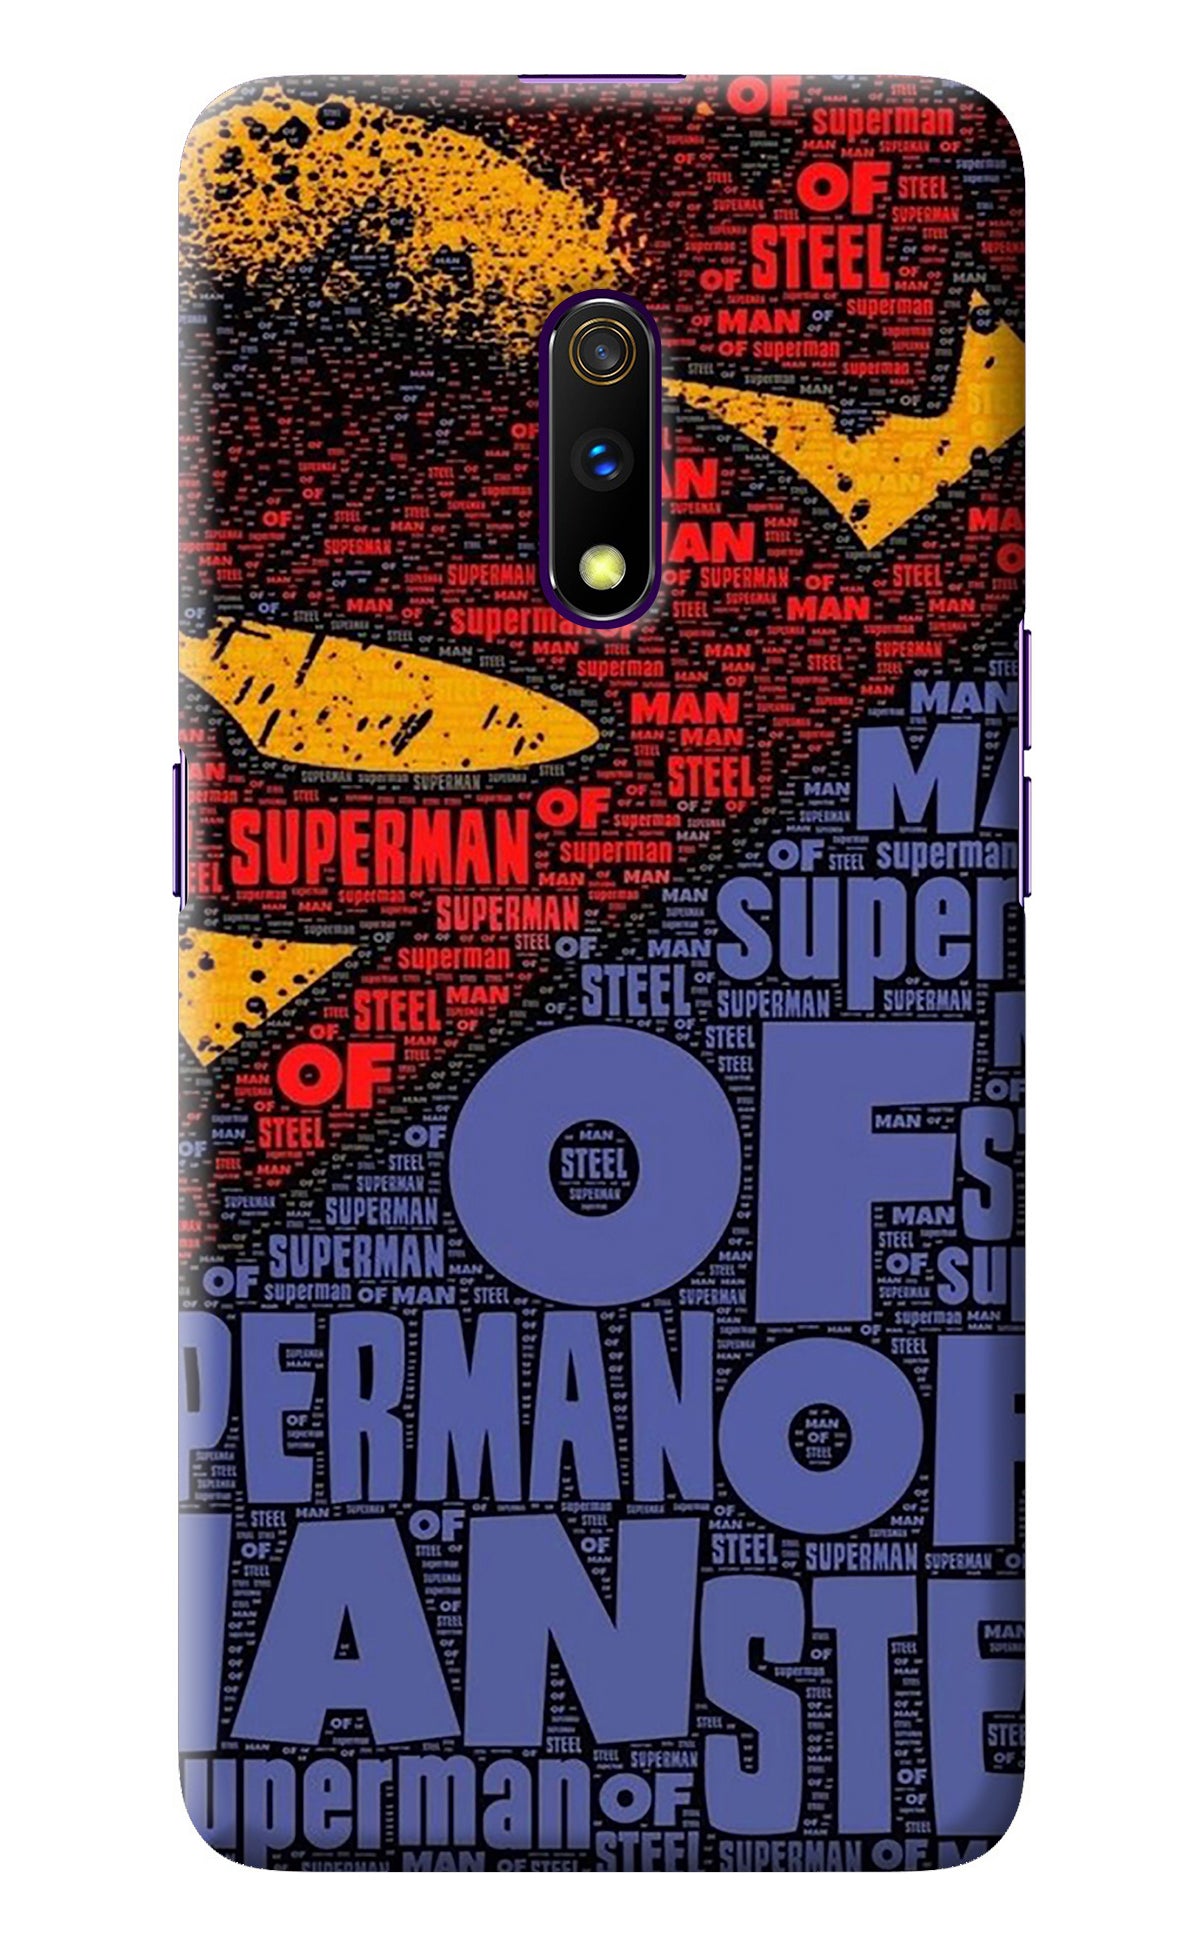 Superman Realme X Back Cover